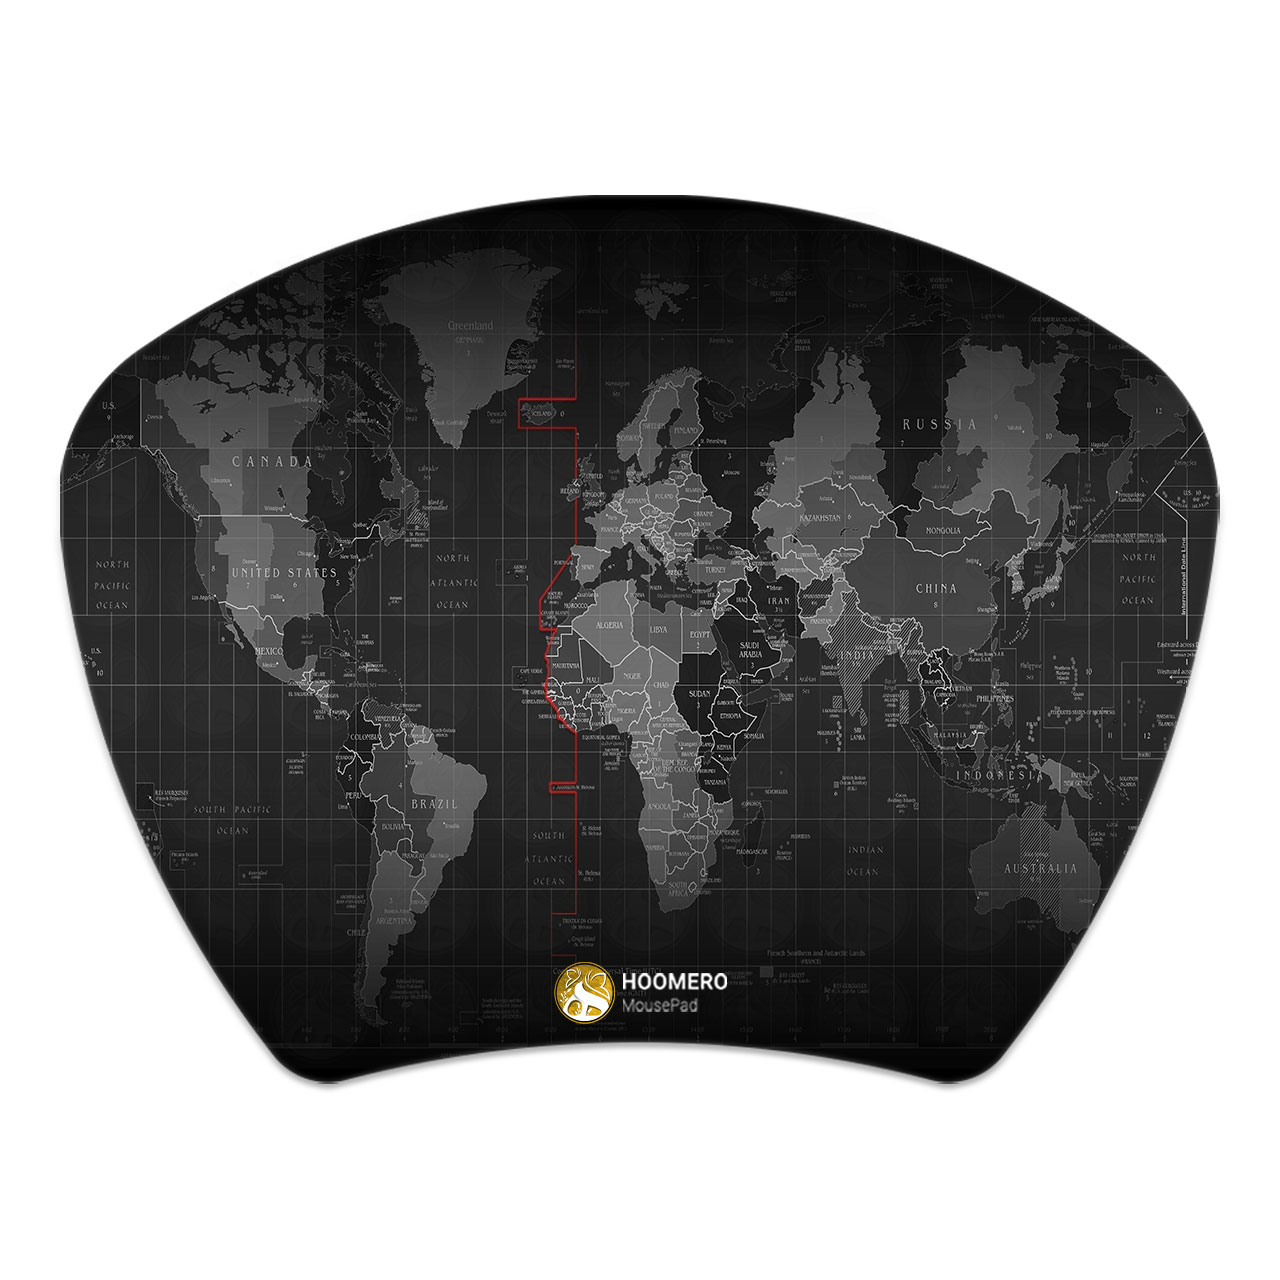 ماوس پد هومرو مدل MC082 طرح نقشه جهان